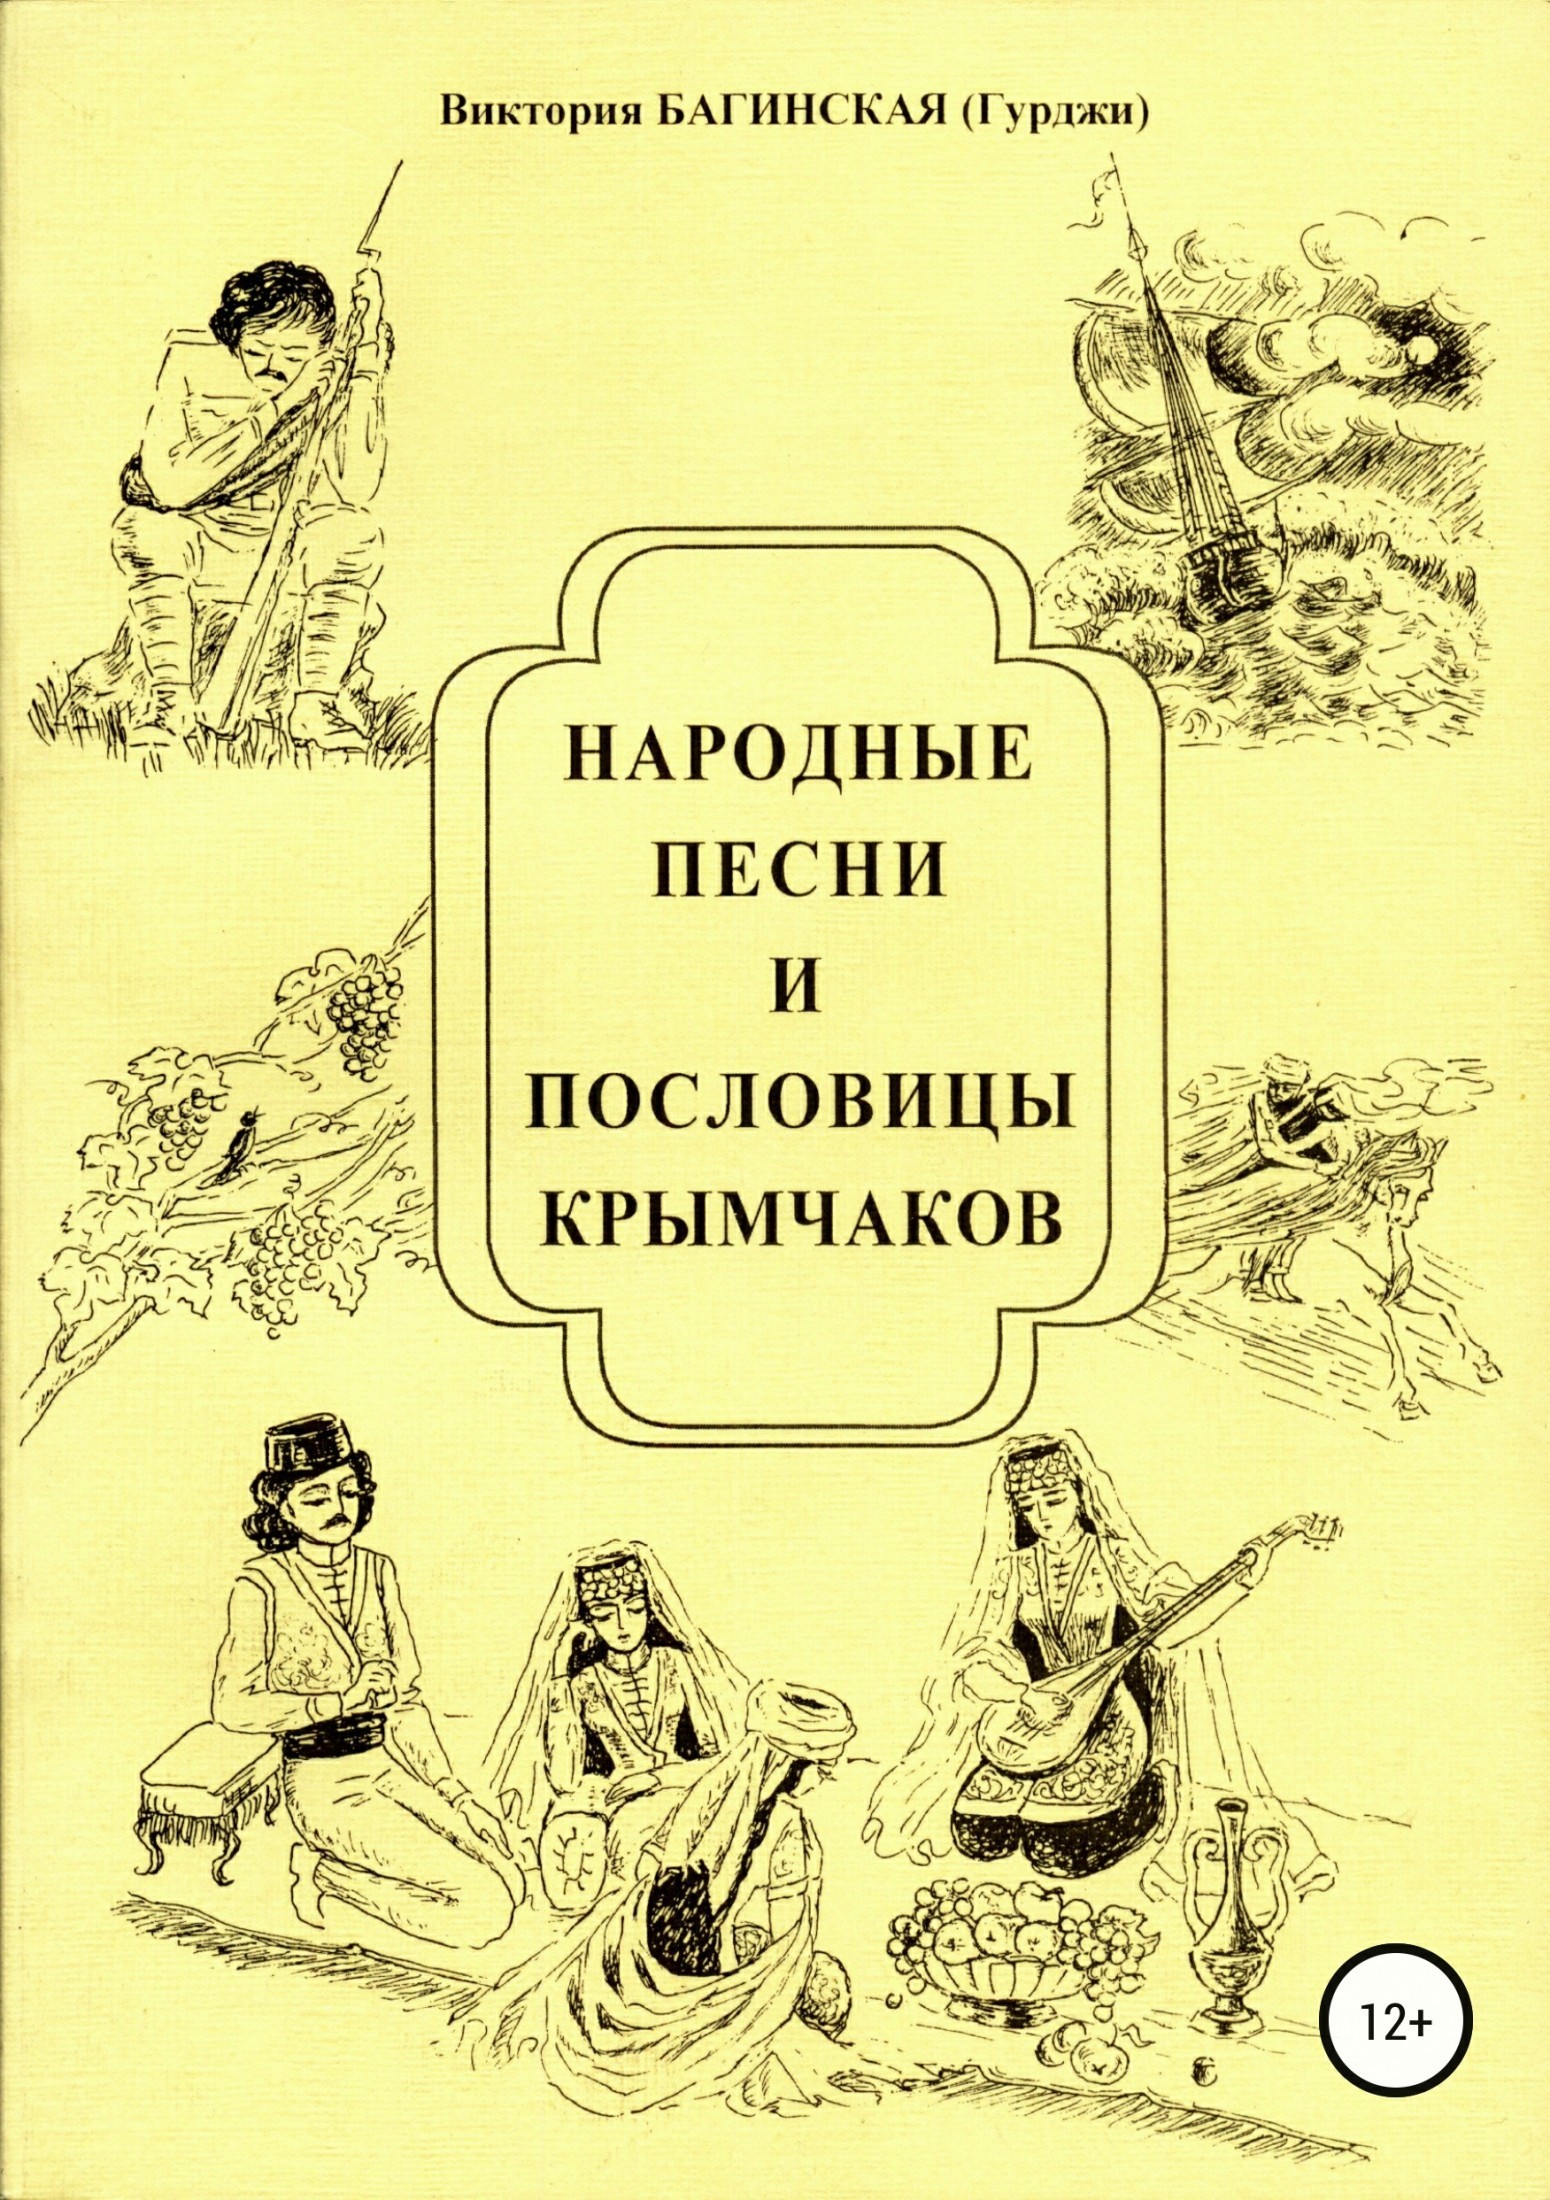 Народные песни и пословицы крымчаков